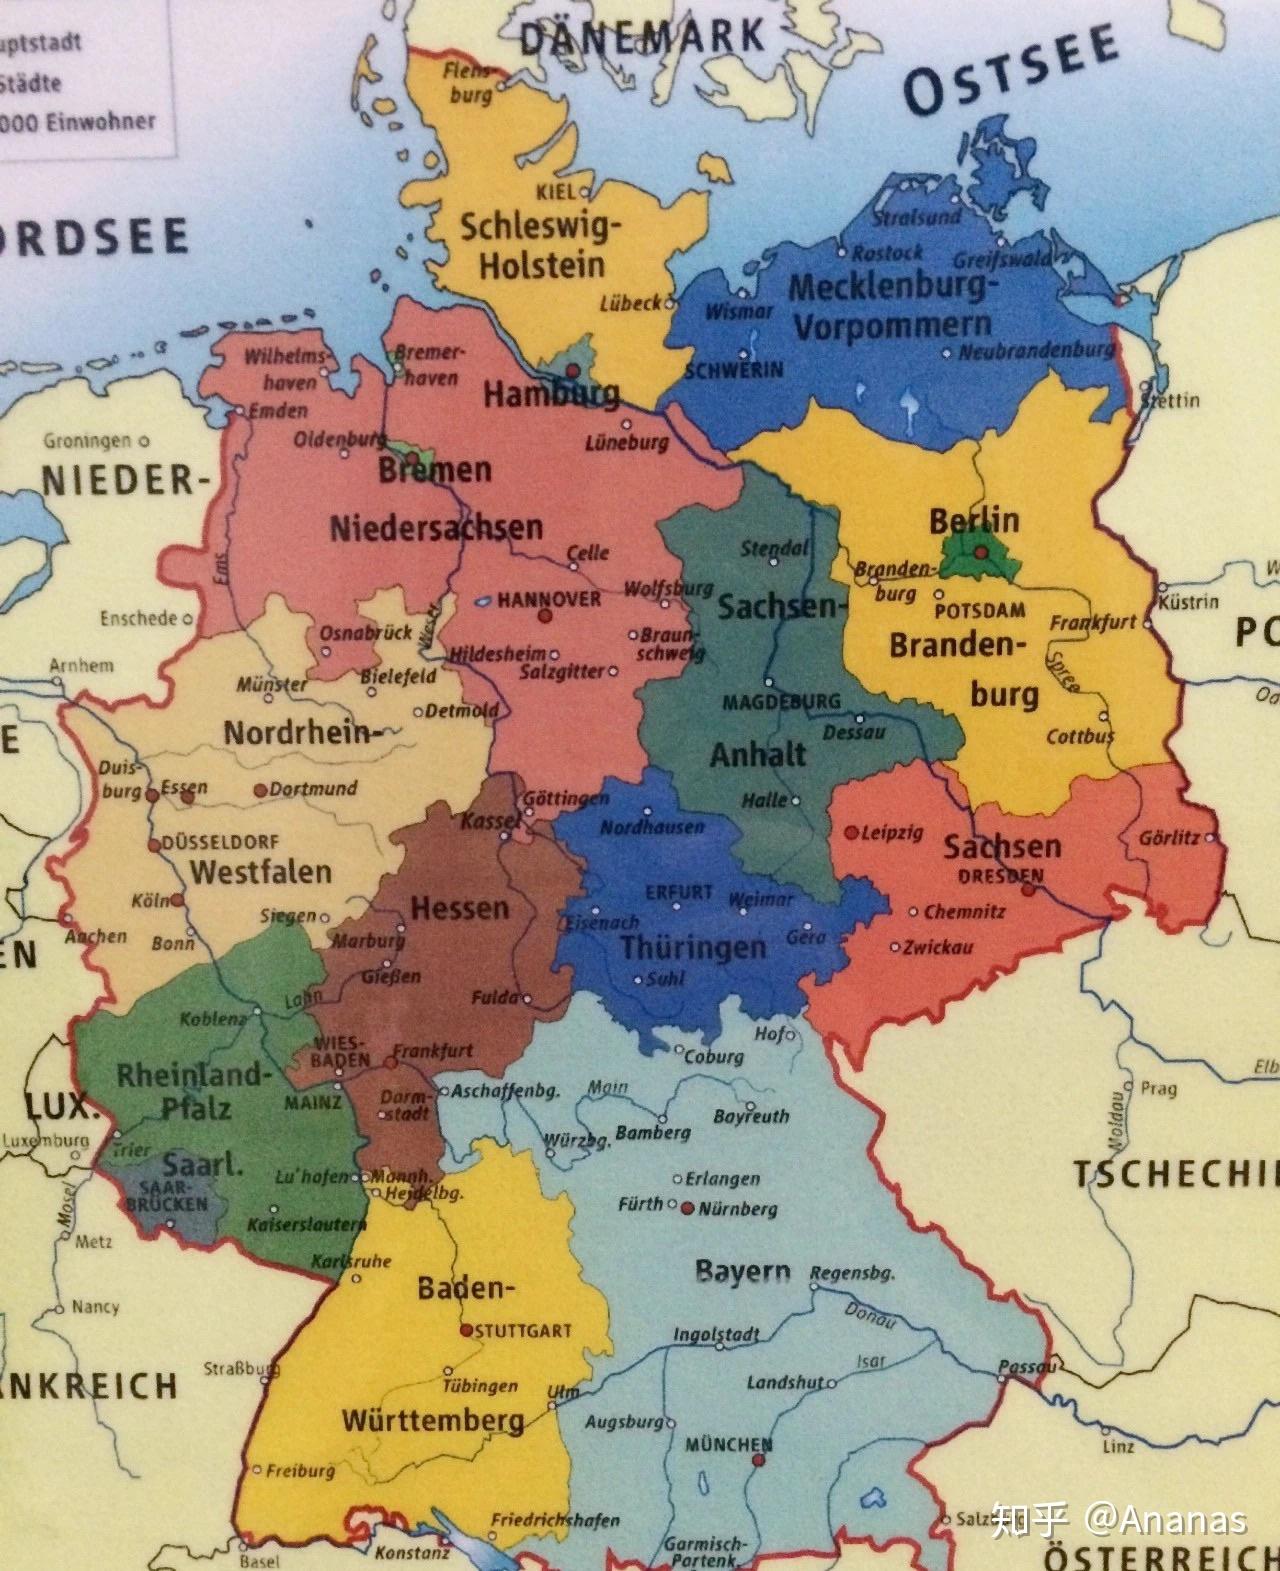 石勒苏益格-荷尔斯泰因州Schleswig Holstein +梅克伦堡-前波美尼亚州 Mecklenburg-Vorpommern